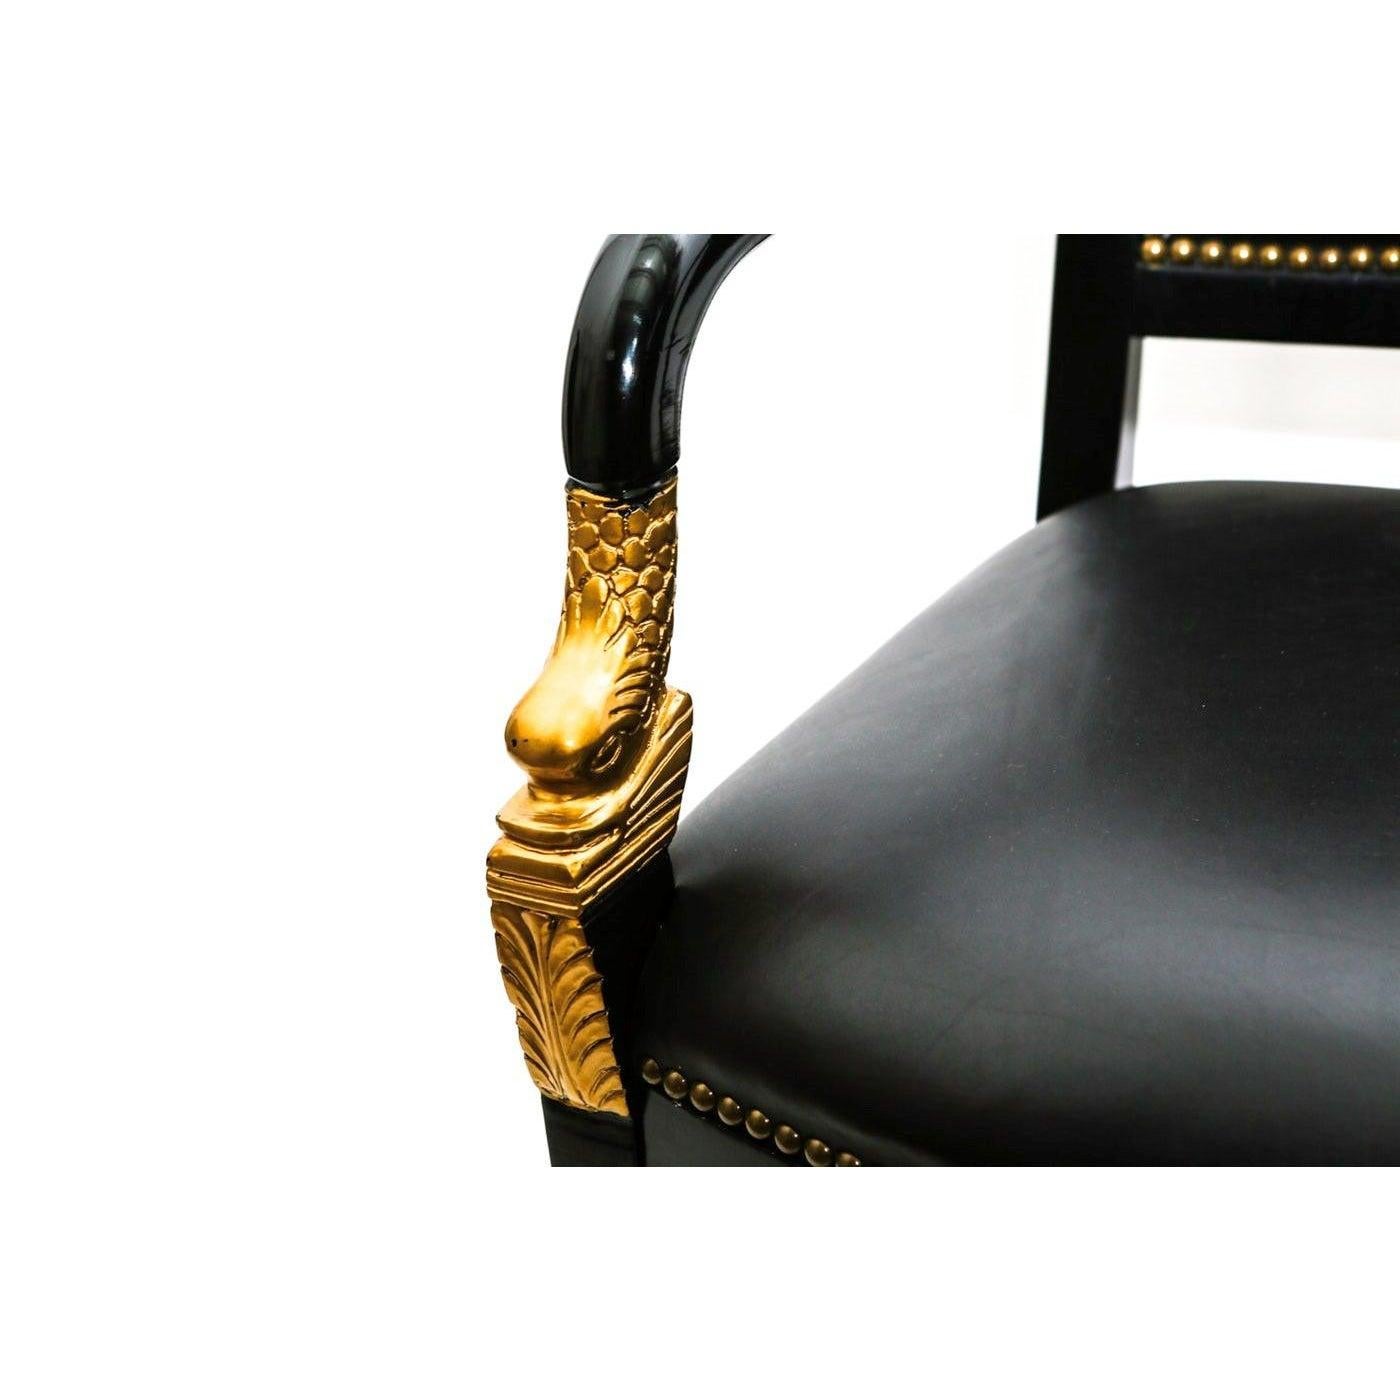 Ein Paar majestätischer französischer Empire-Mahagoni-Fauteuils (offene Sessel) aus dem späten 19. Jahrhundert, die mit einer reichen schwarzen Lackierung versehen sind. Dieses Stuhlpaar besteht aus einer oberen Schiene, die zu geformten Armlehnen